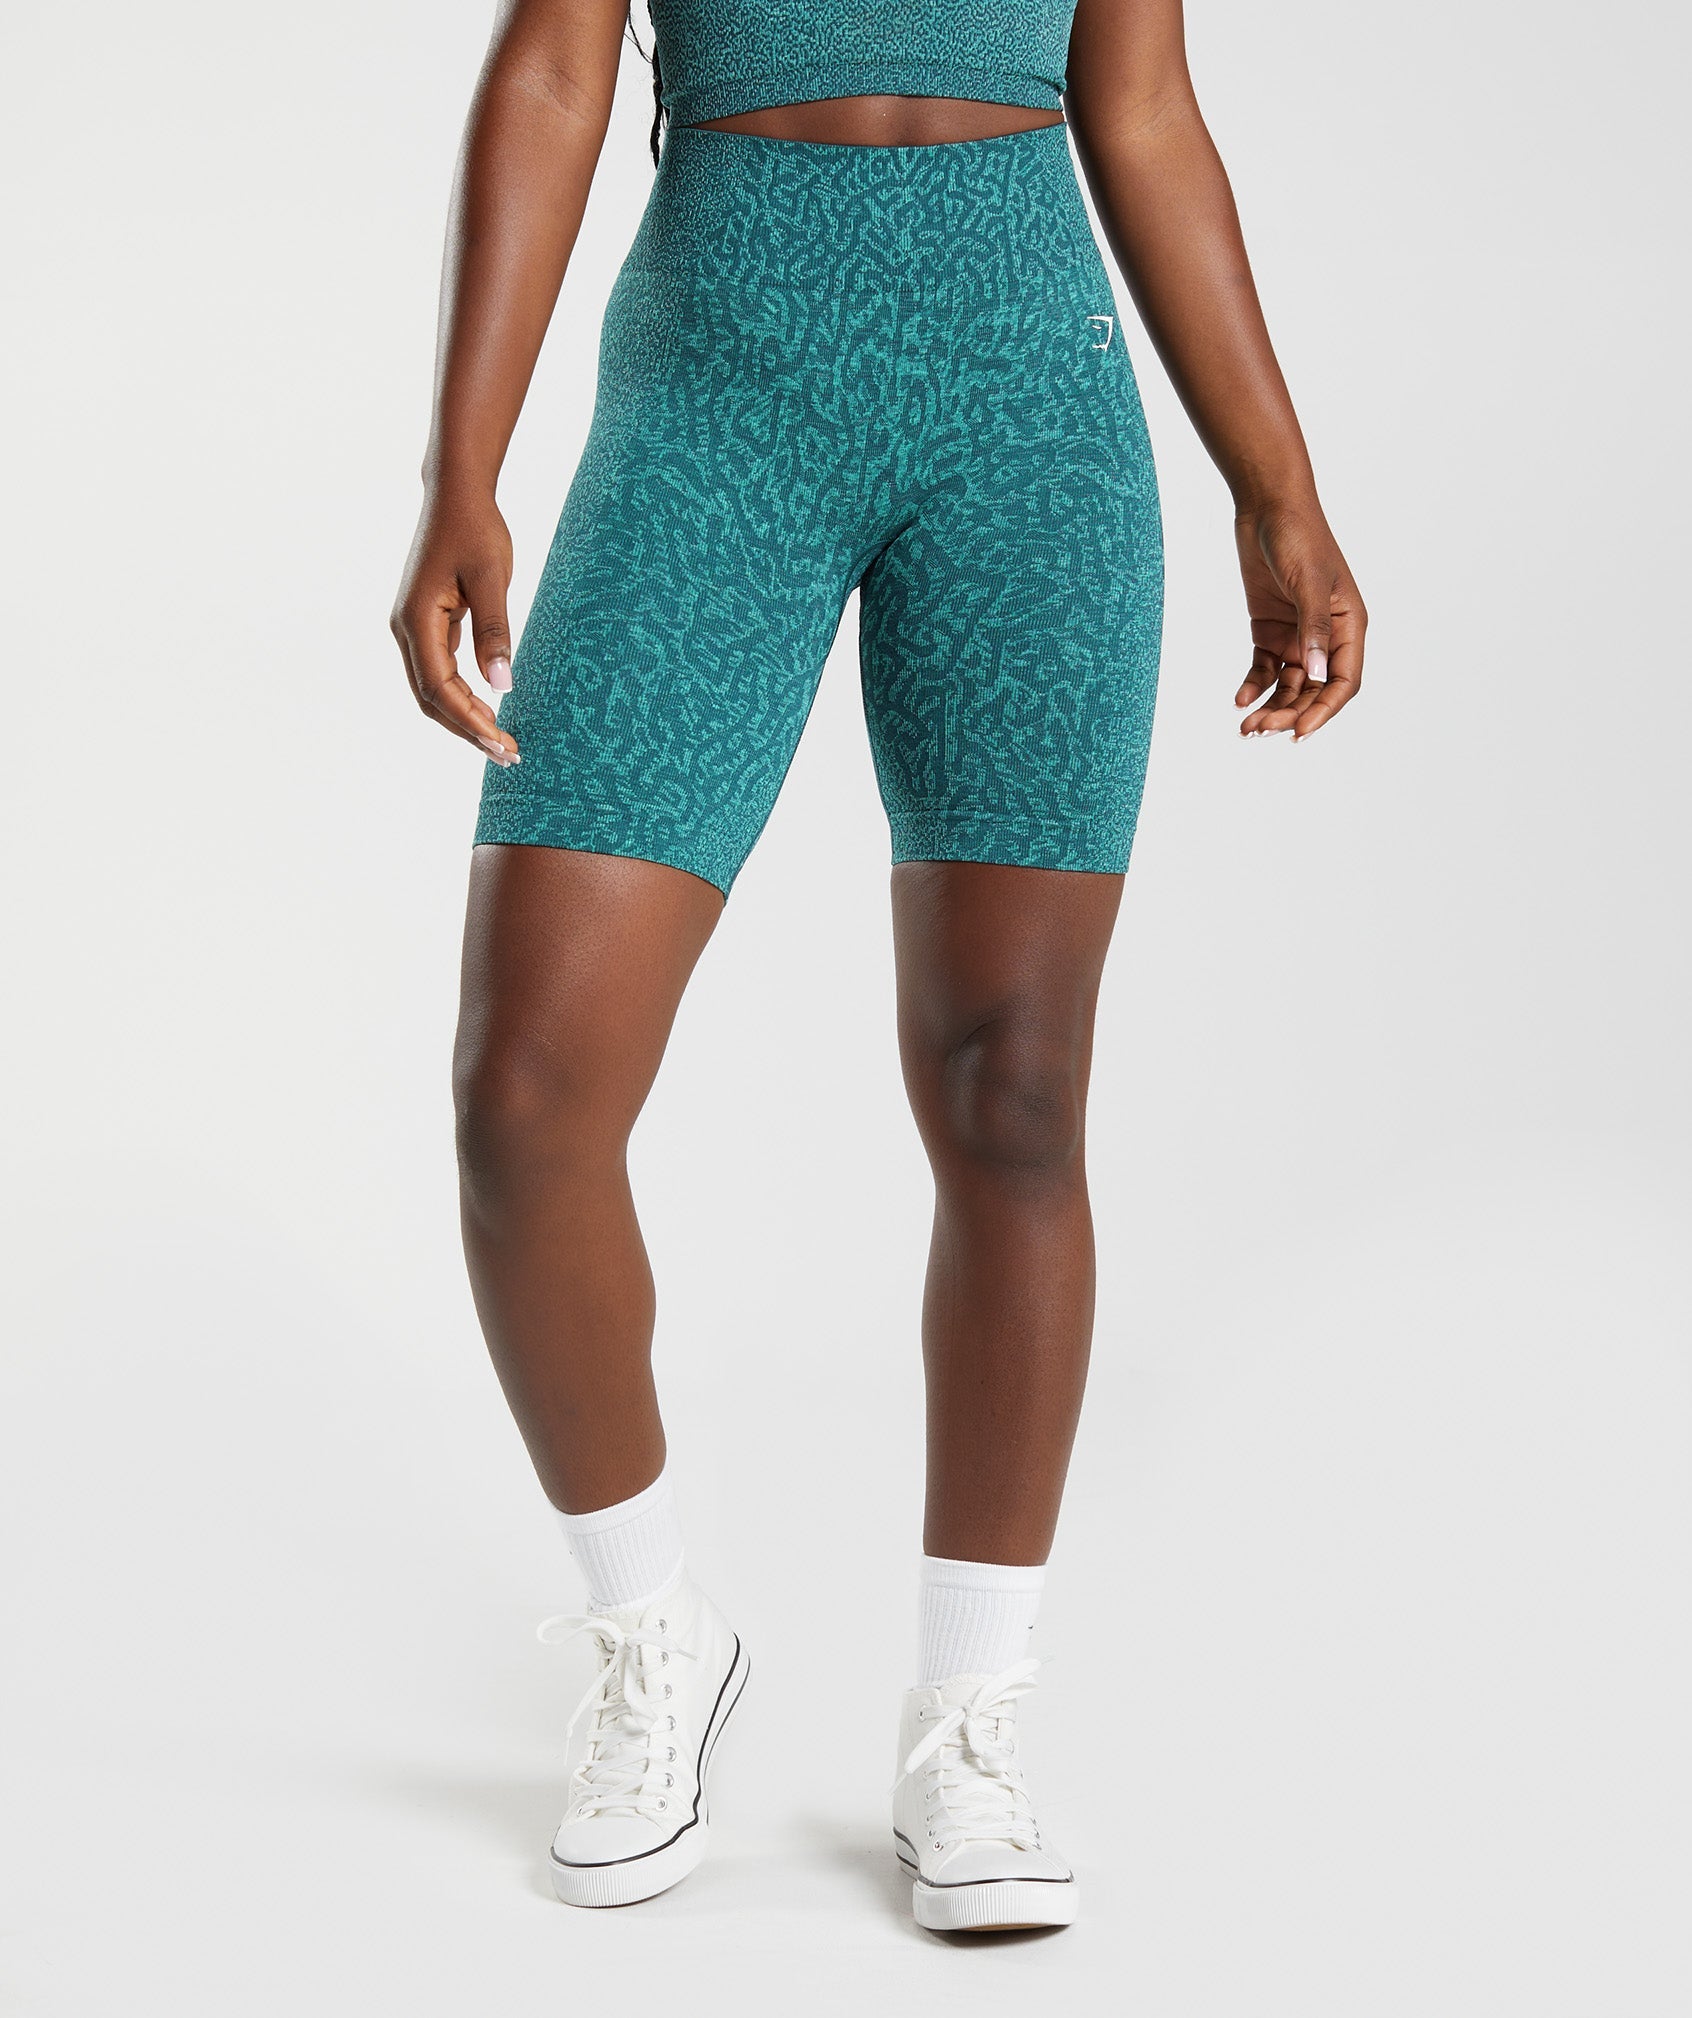 Gymshark Women's Adapt Animal Seamless Cycling Shorts JM3 Court Blue Medium  шорты и юбки V74059041 купить по выгодной цене в интернет-магазине   с доставкой